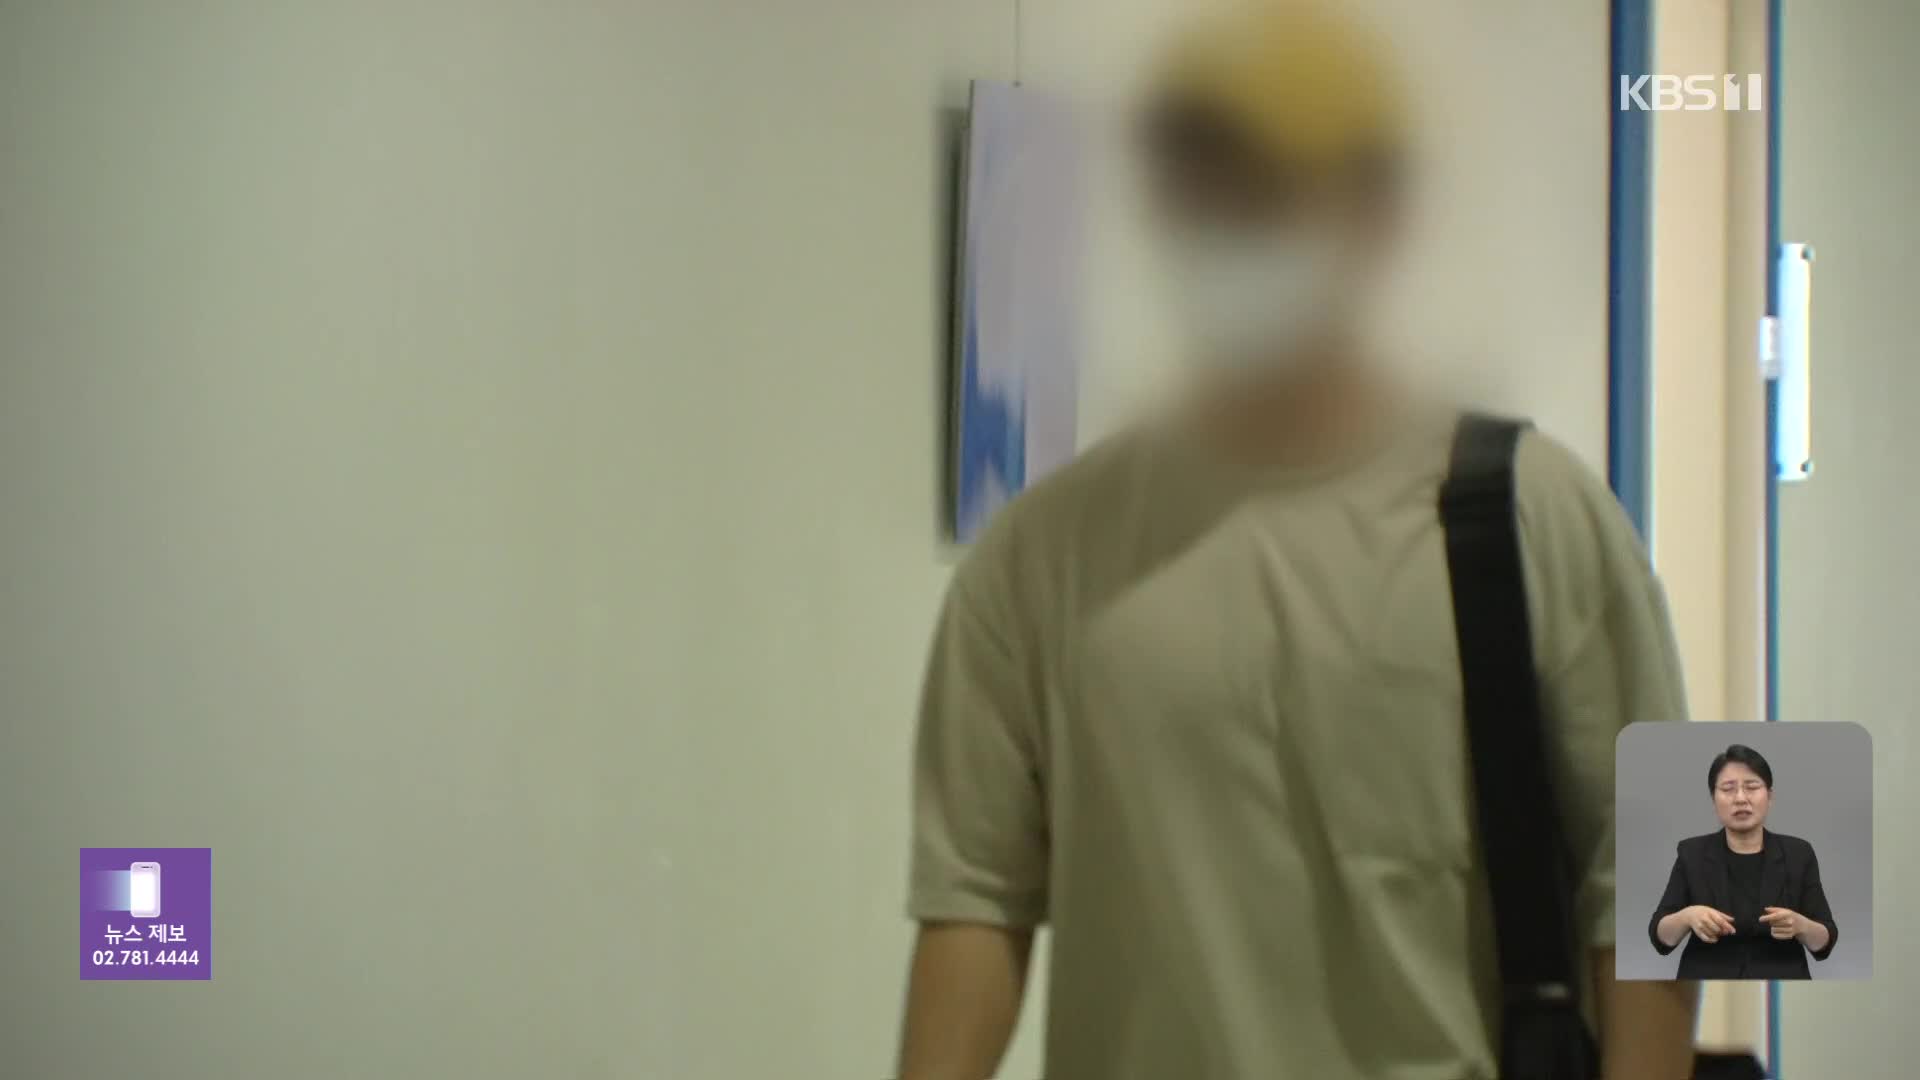 [단독] 현직 경찰관의 ‘두 얼굴’…10대 성착취물에 성매매도